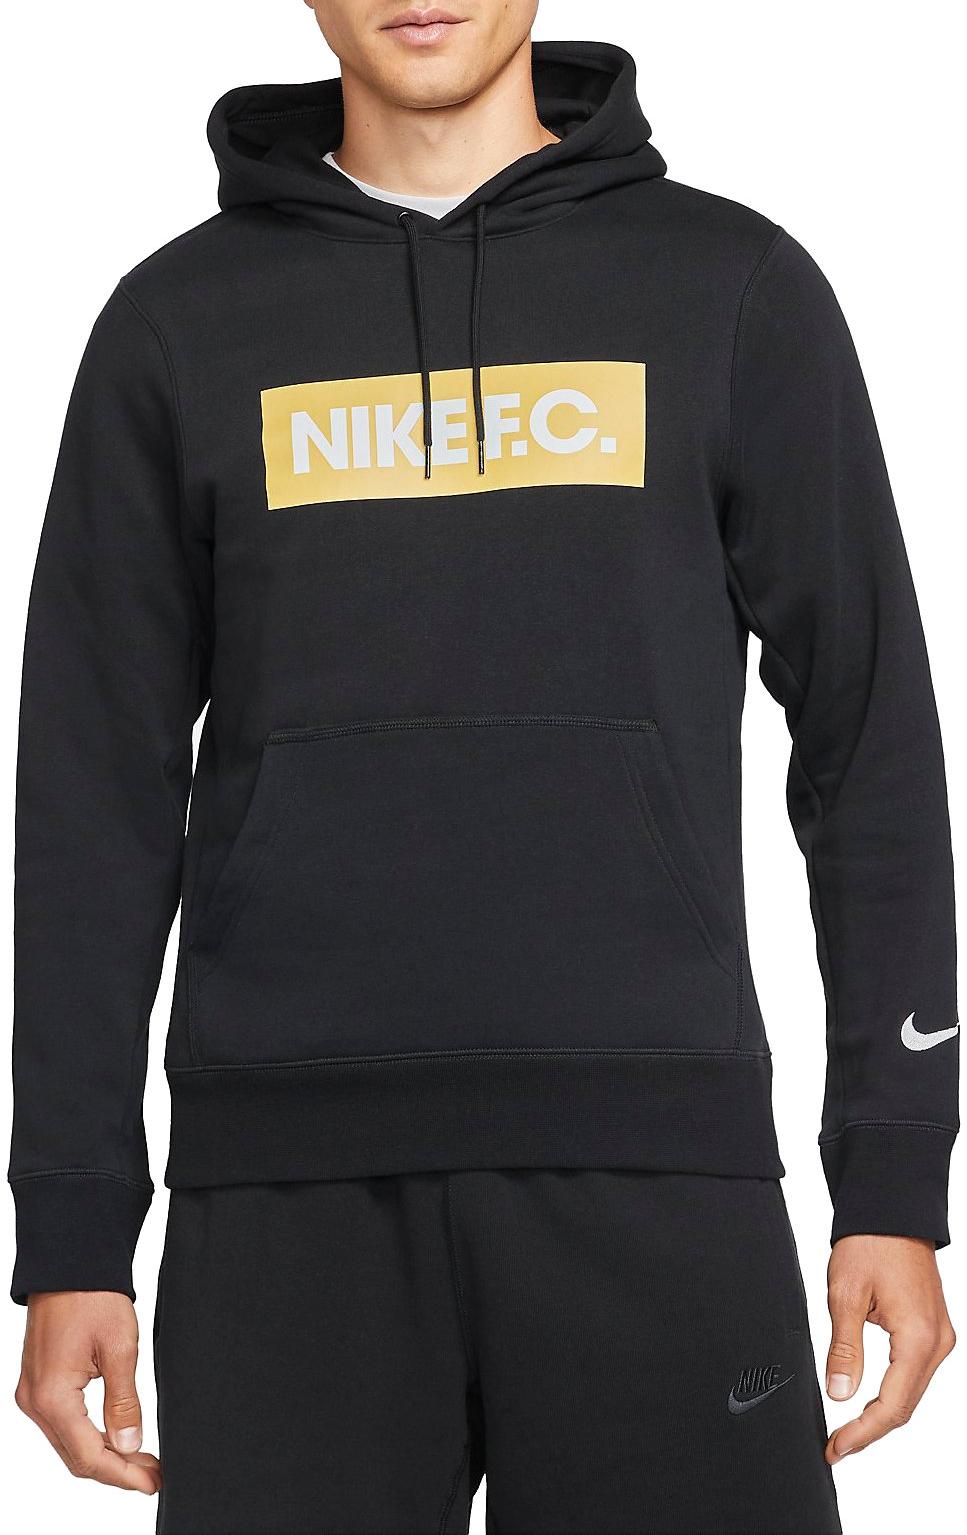 Sudadera con capucha Nike Men s Pullover Fleece Soccer Hoodie - Top4Fitness.es